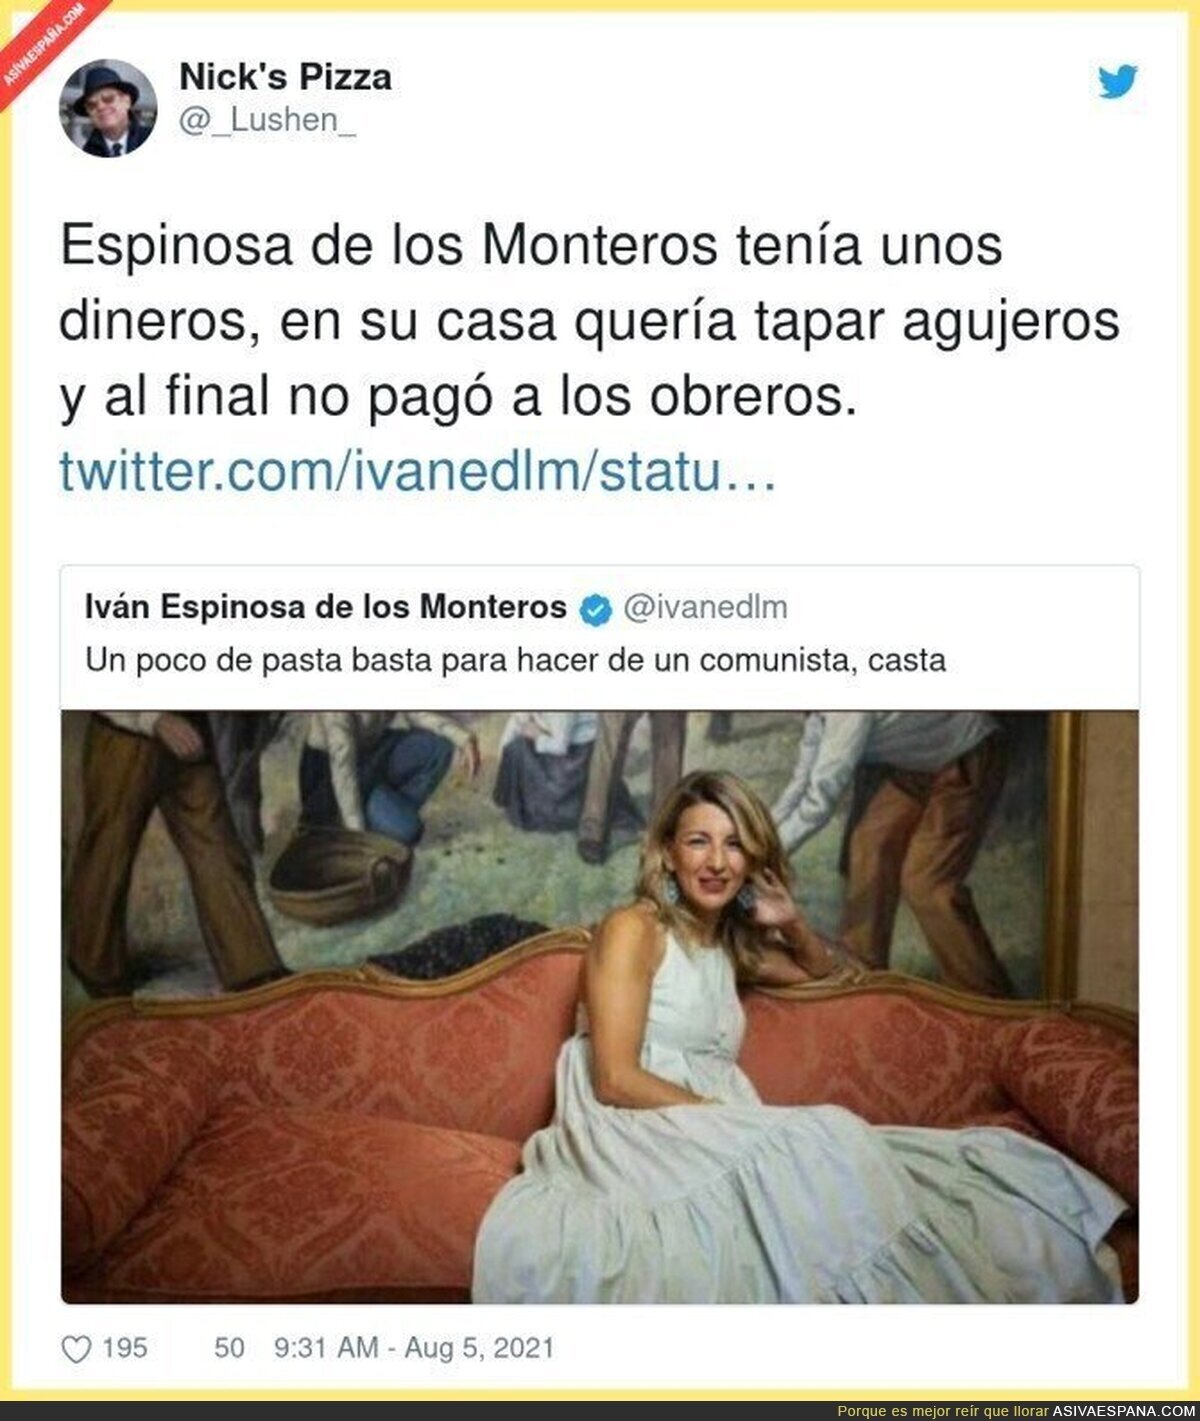 Iván Espinosa de los Monteros debe estar muy callado